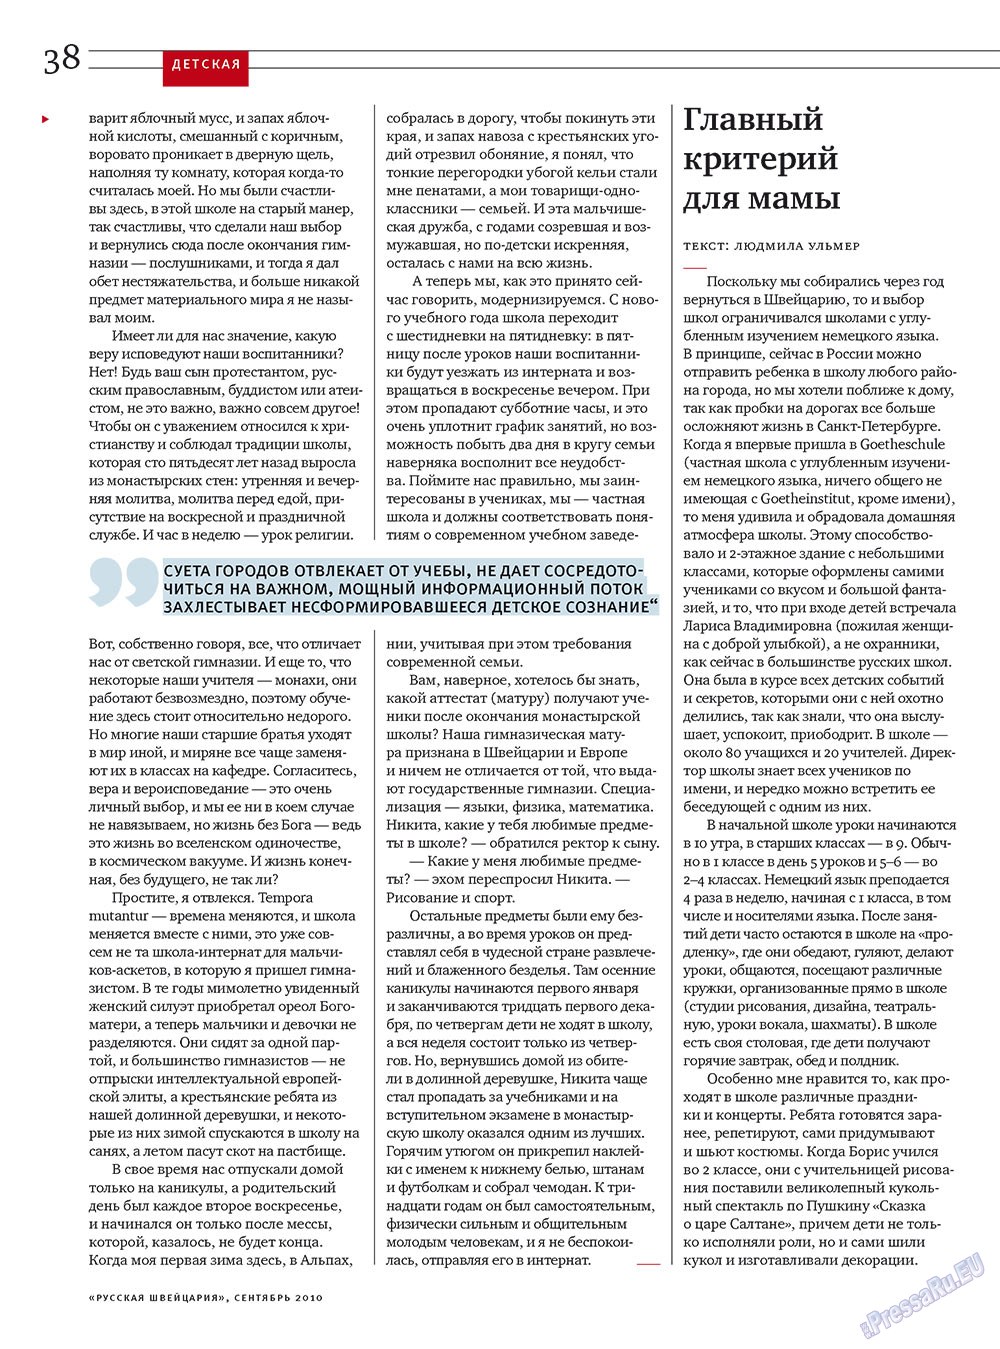 Русская Швейцария, журнал. 2010 №7 стр.38